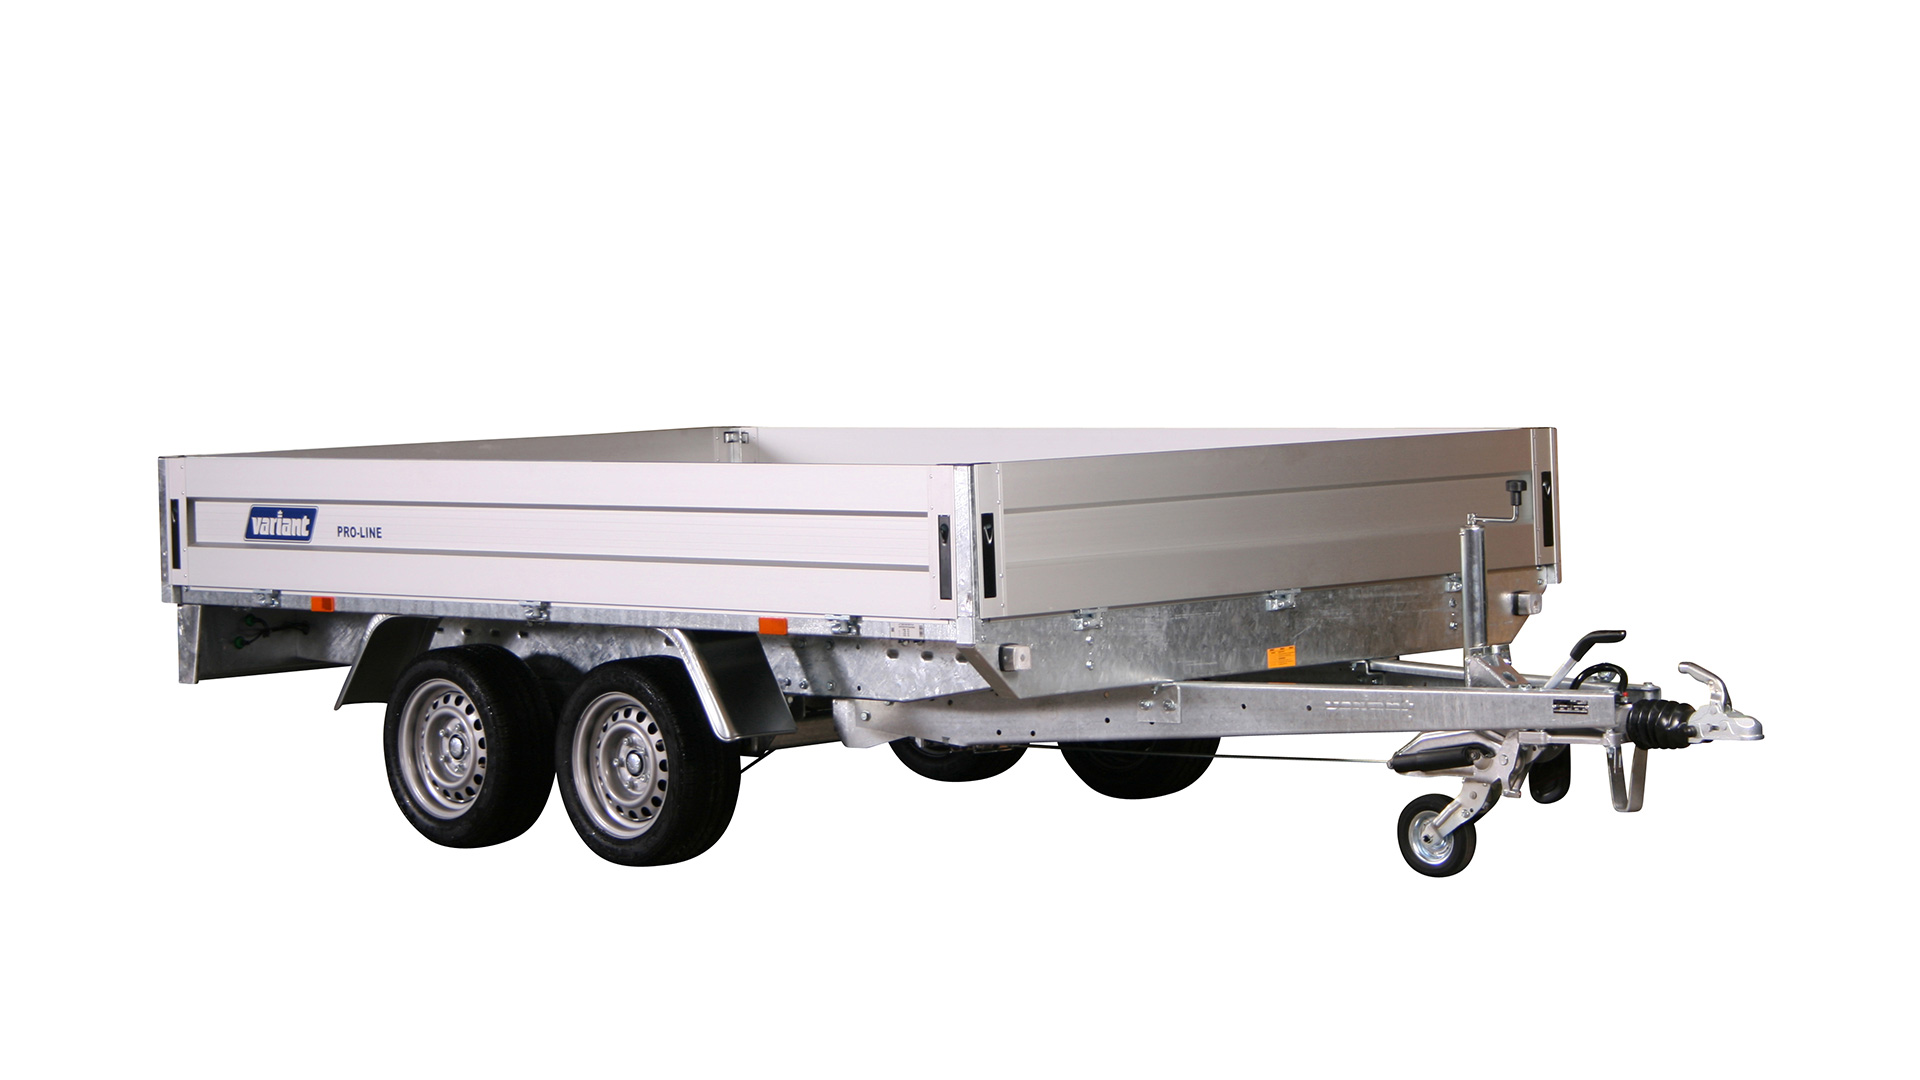 Variant PKW Anhänger Hochlader 3521 P3, 3500 kg, Ladefläche3,15 x 2,05 m - Konfiguration